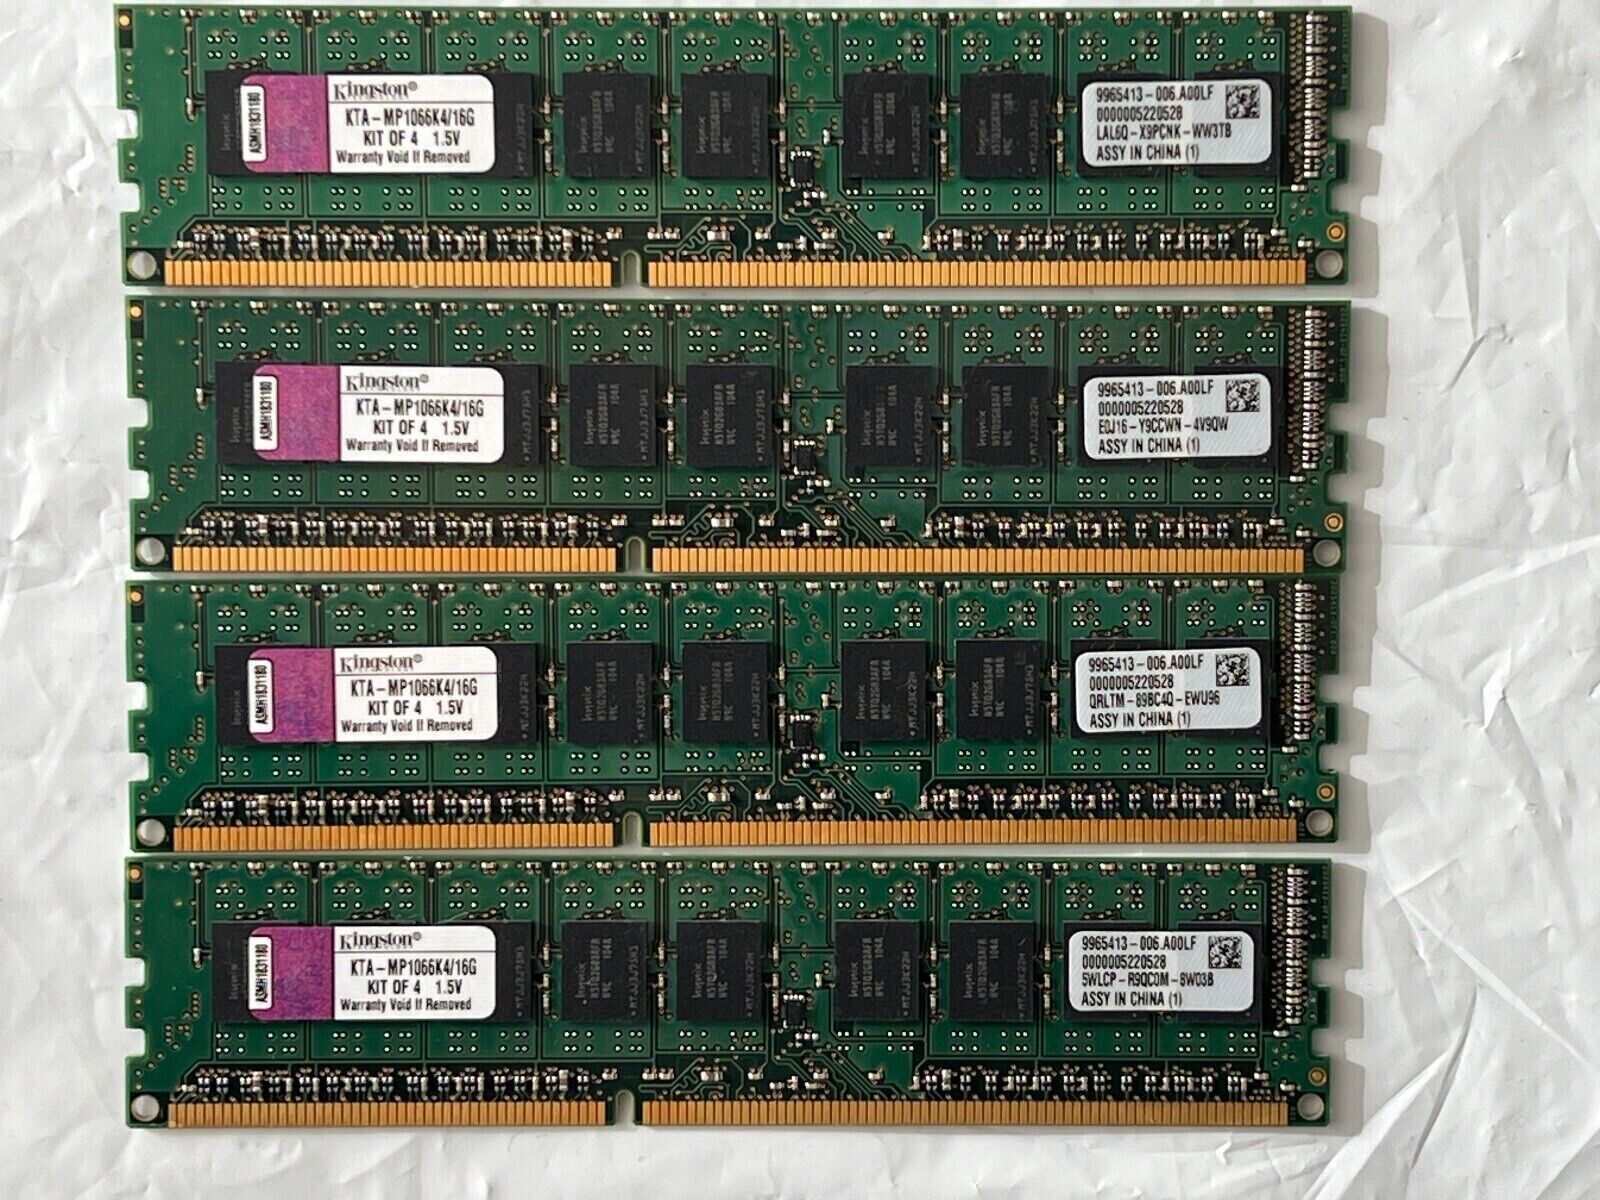 Kingston 16GB (4x4GB) PC3-8500 DDR3-1066MHz ECC Unbuffered DIMM KTA-MP1066K4/16G